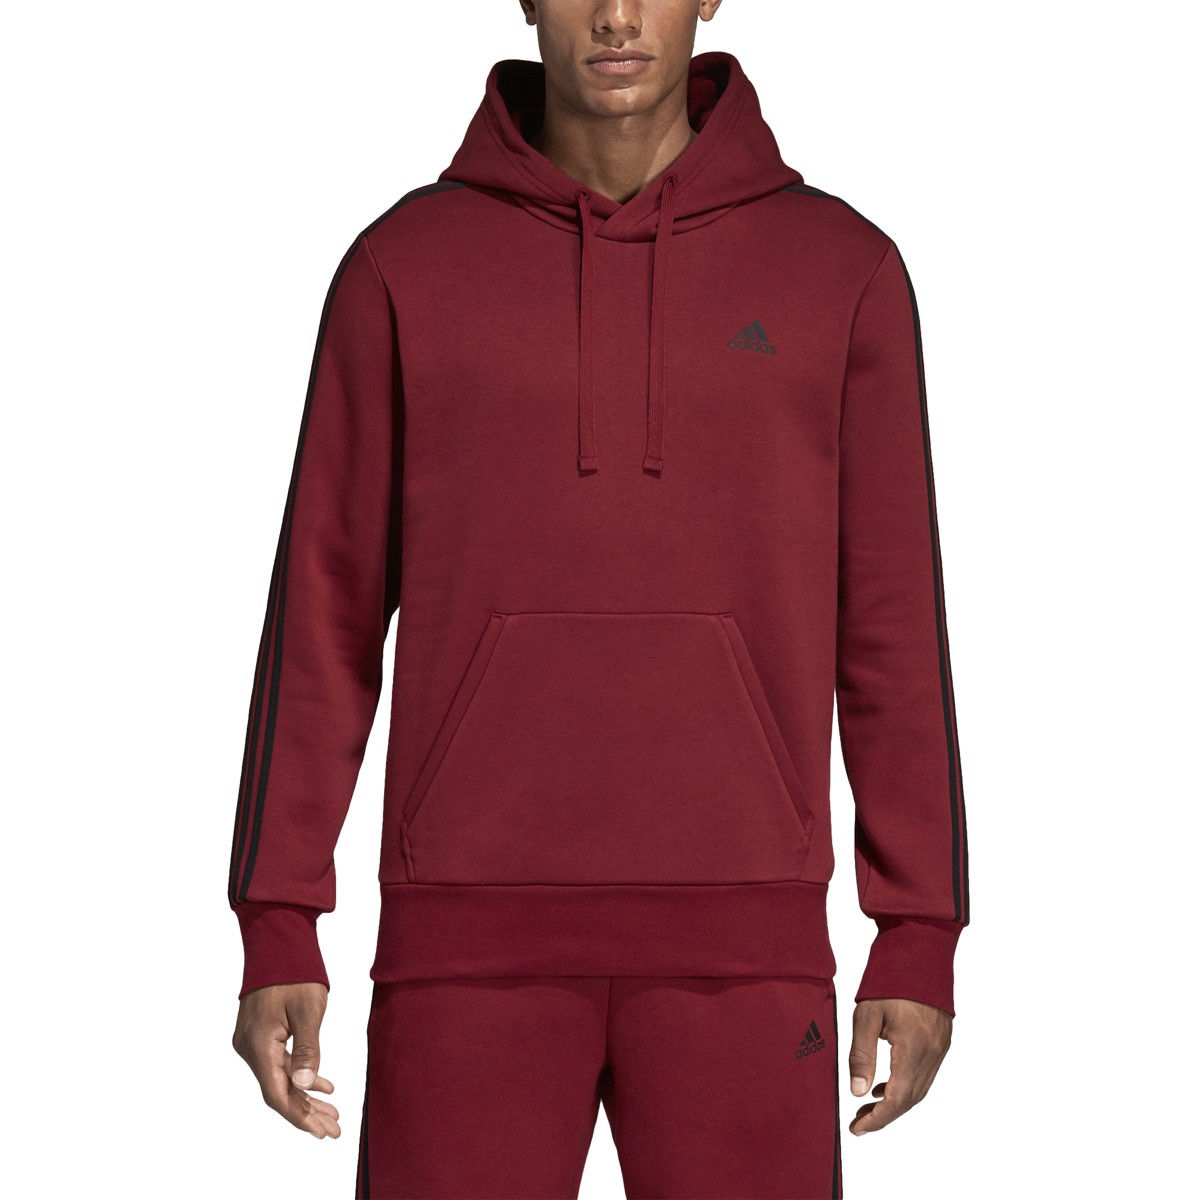 maroon hoodie adidas